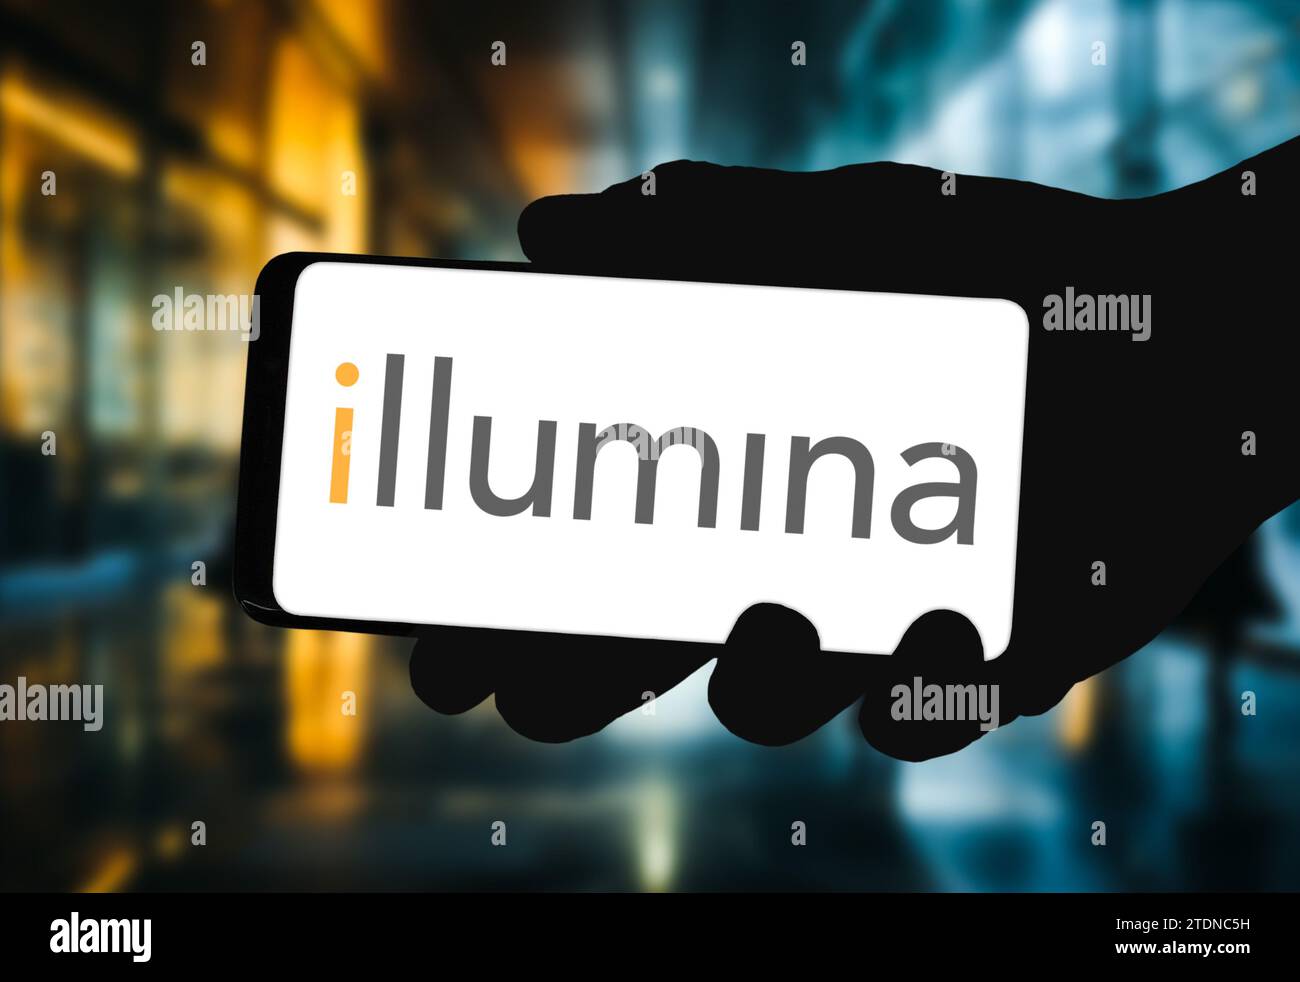 Biotechnologie-Unternehmen Illumina auf Mobilgeräten angezeigt Stockfoto